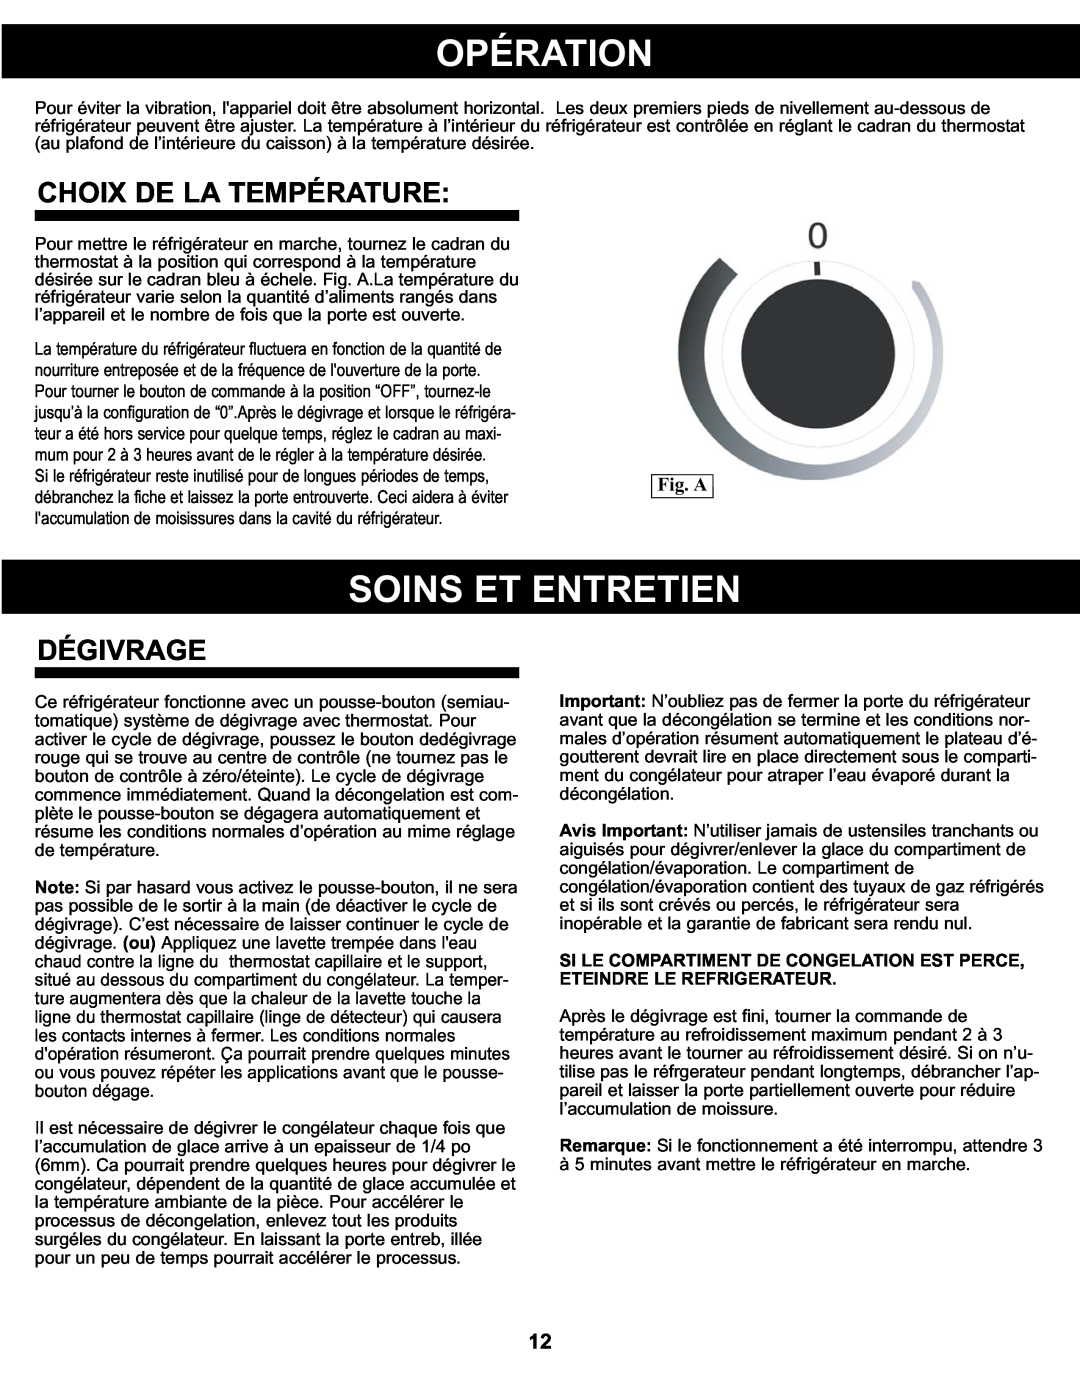 Danby DCR122BLDD manual Opération, Soins Et Entretien, Choix De La Température, Dégivrage, Fig. A 